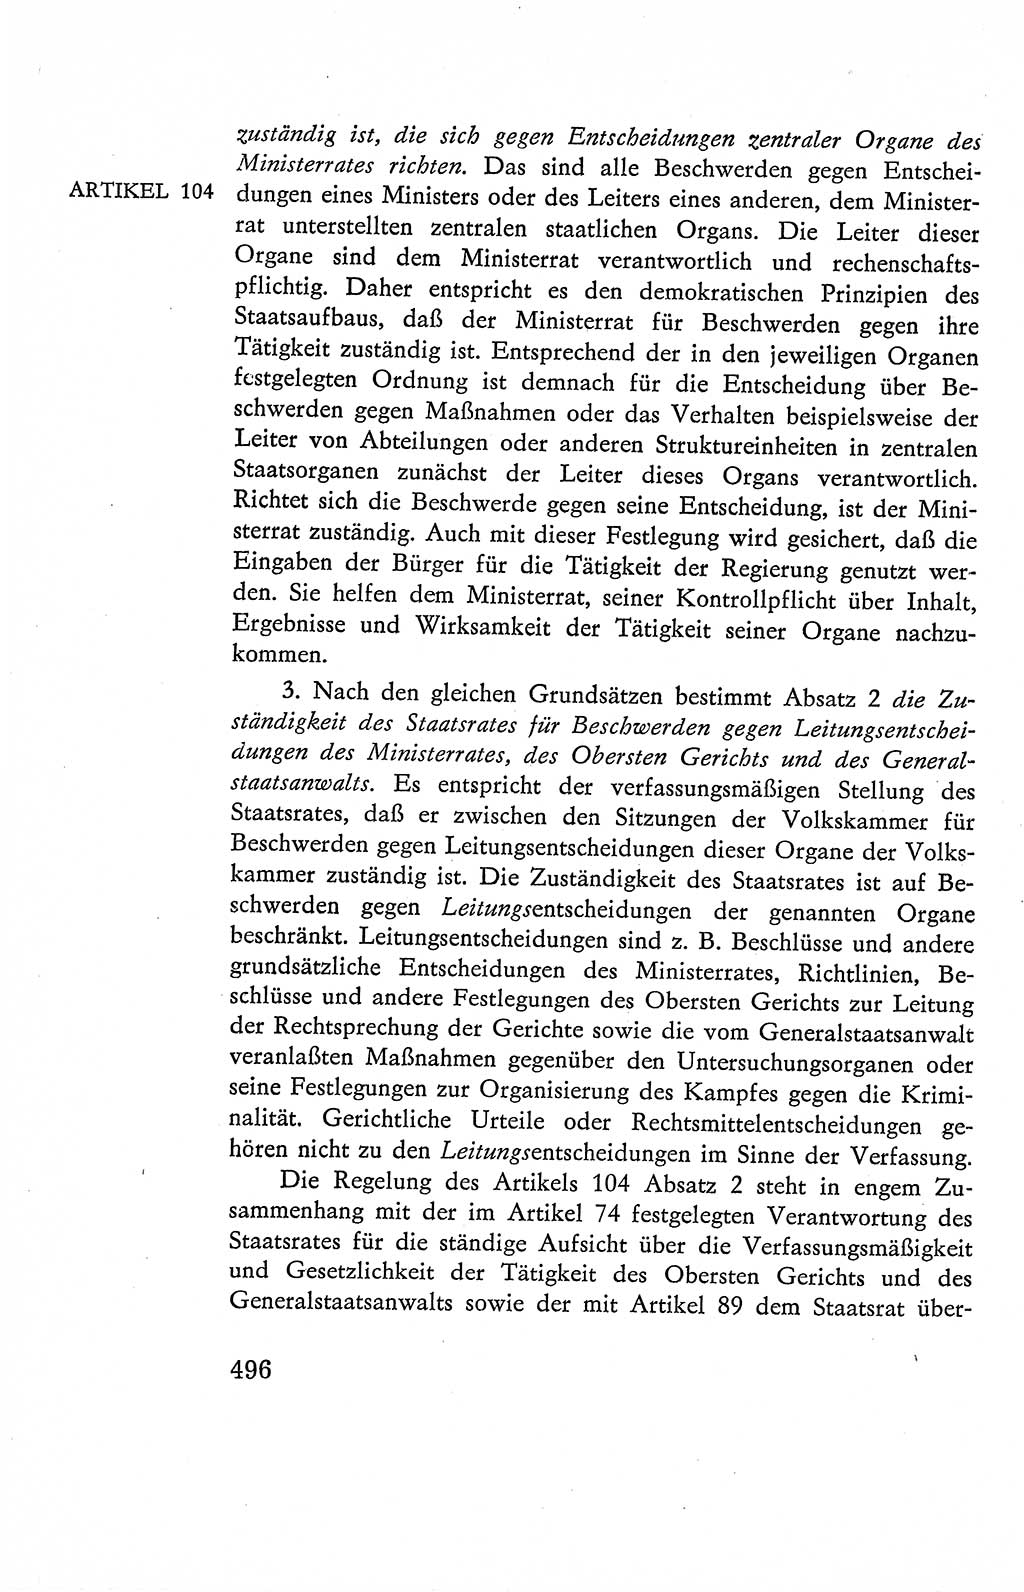 Verfassung der Deutschen Demokratischen Republik (DDR), Dokumente, Kommentar 1969, Band 2, Seite 496 (Verf. DDR Dok. Komm. 1969, Bd. 2, S. 496)